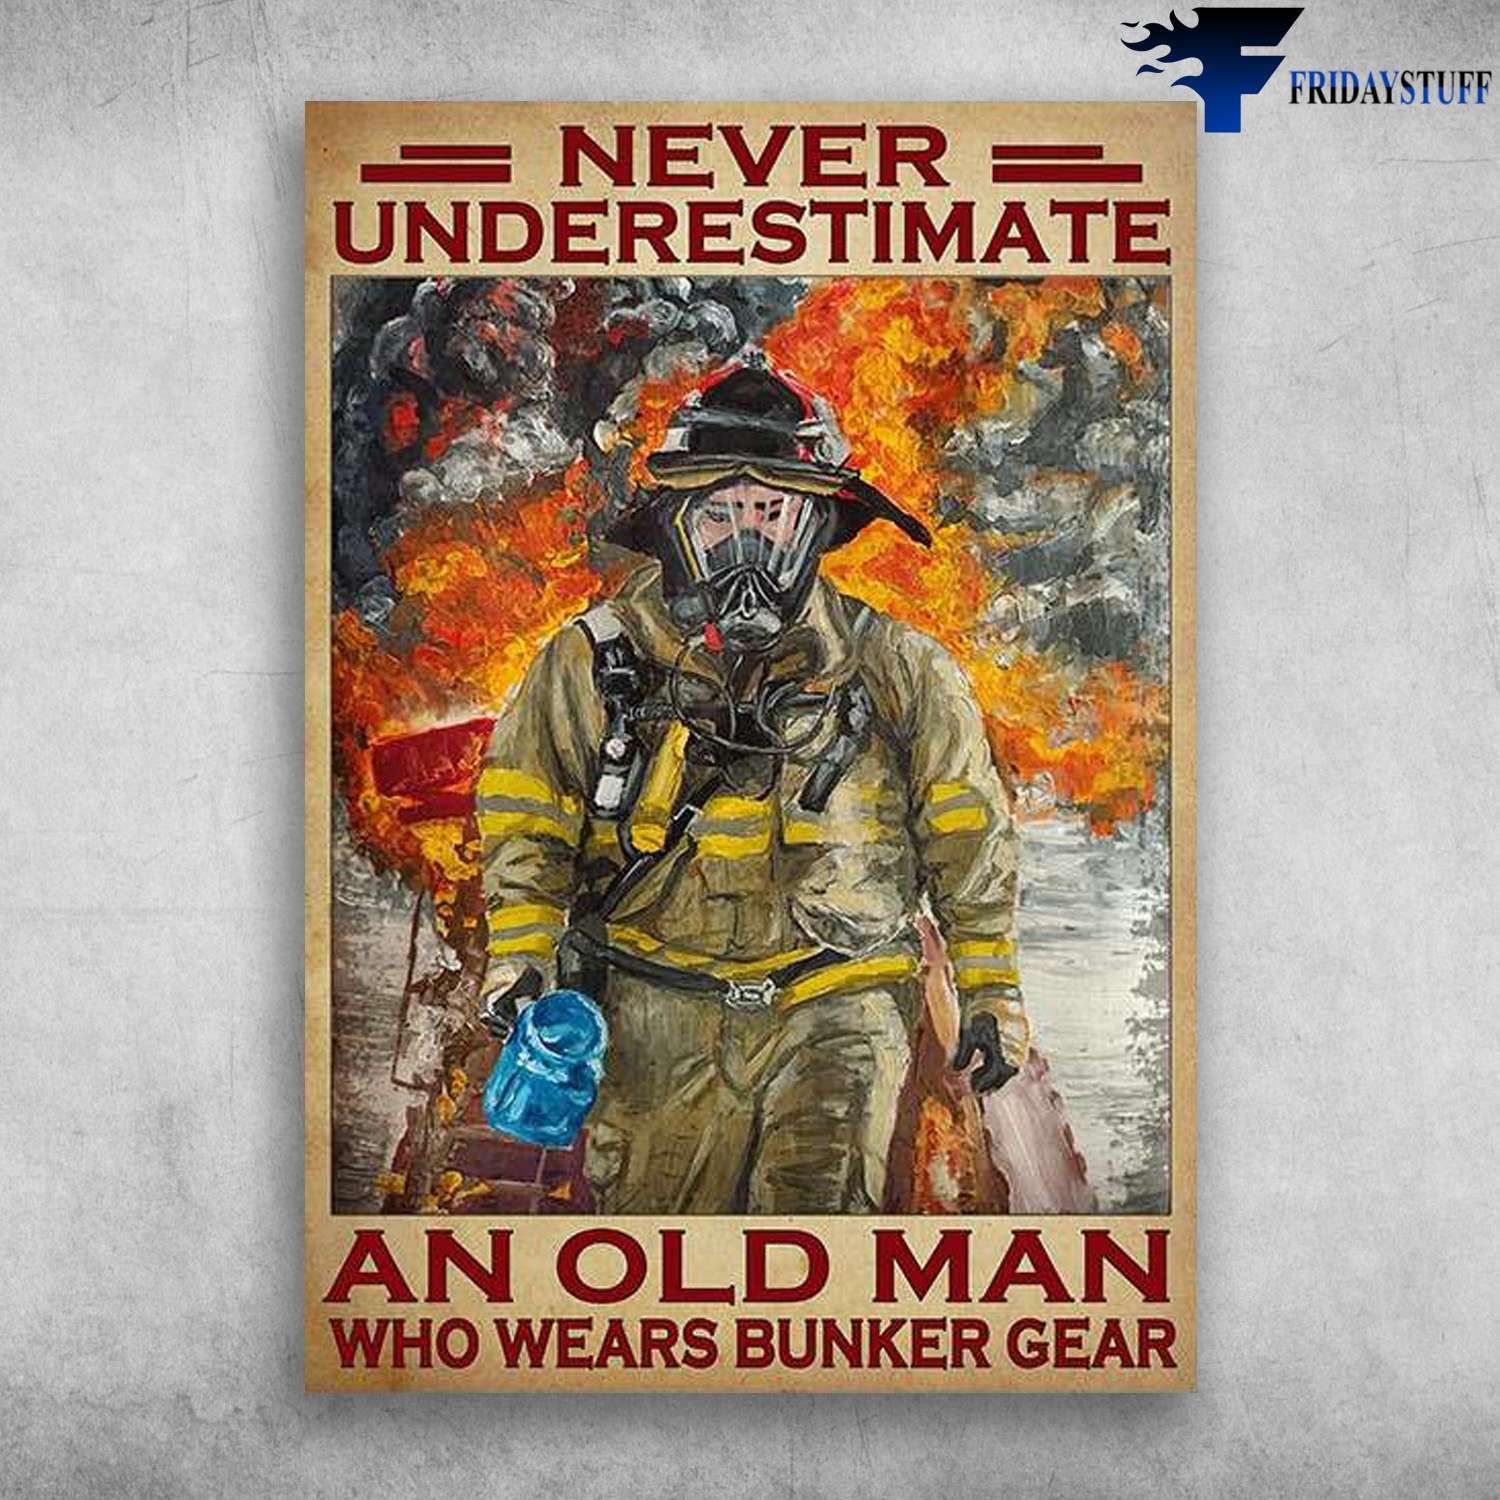 Firefighter Man - Never Underestimate An Old Man, Who Wears Bunker Gear